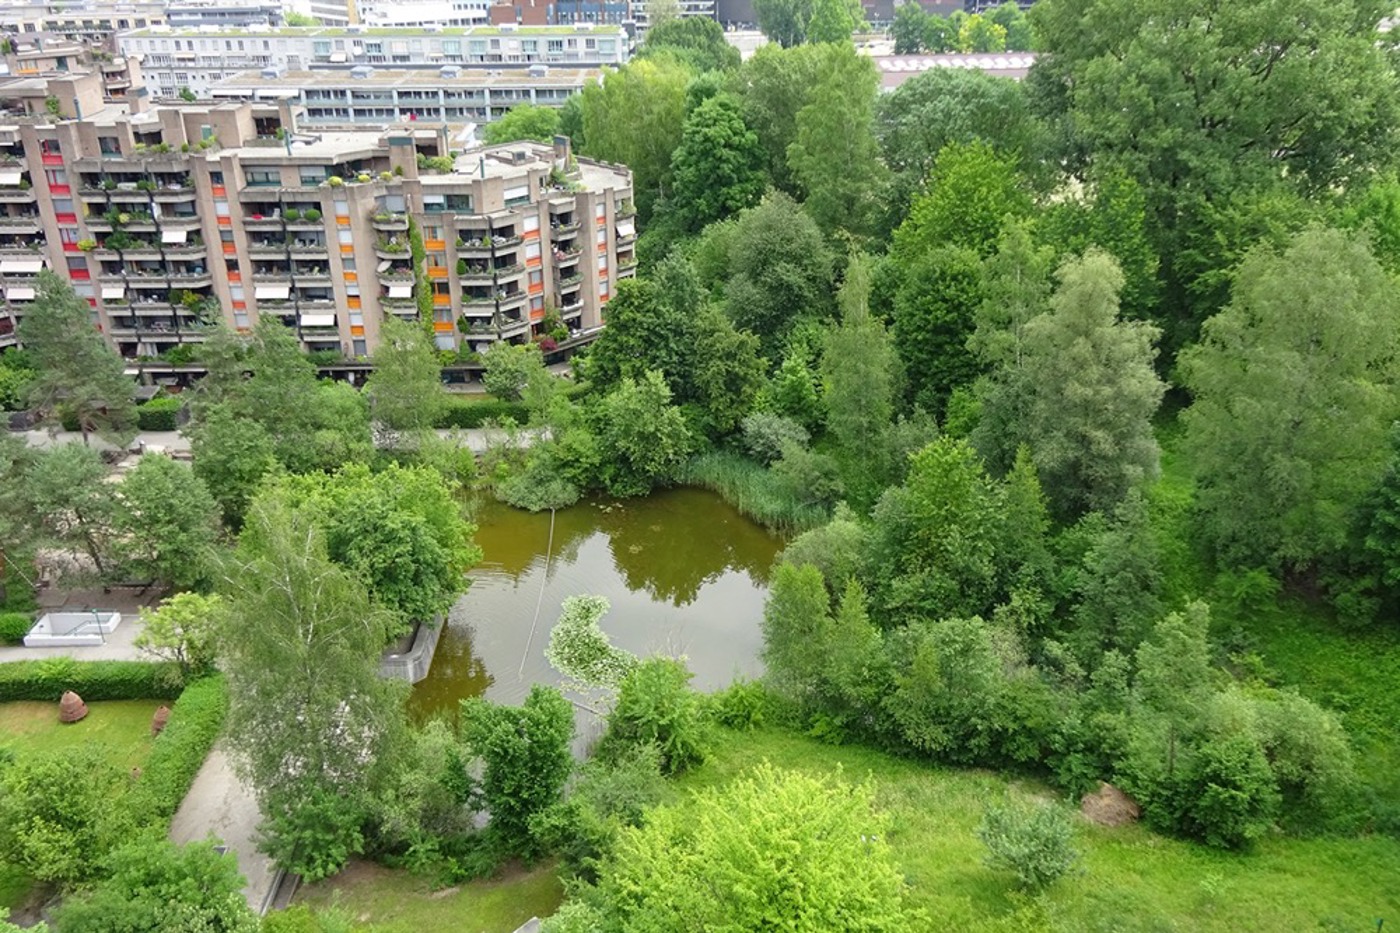 Die Bewohnerinnen und Bewohner dieses Quartiers profitieren von den grosszügigen Grünflächen mit ausladenden Bäumen und den offenen Wasserflächen, welche die Temperaturspitzen an heissen Sommertagen spürbar reduzieren. © BirdLife Schweiz